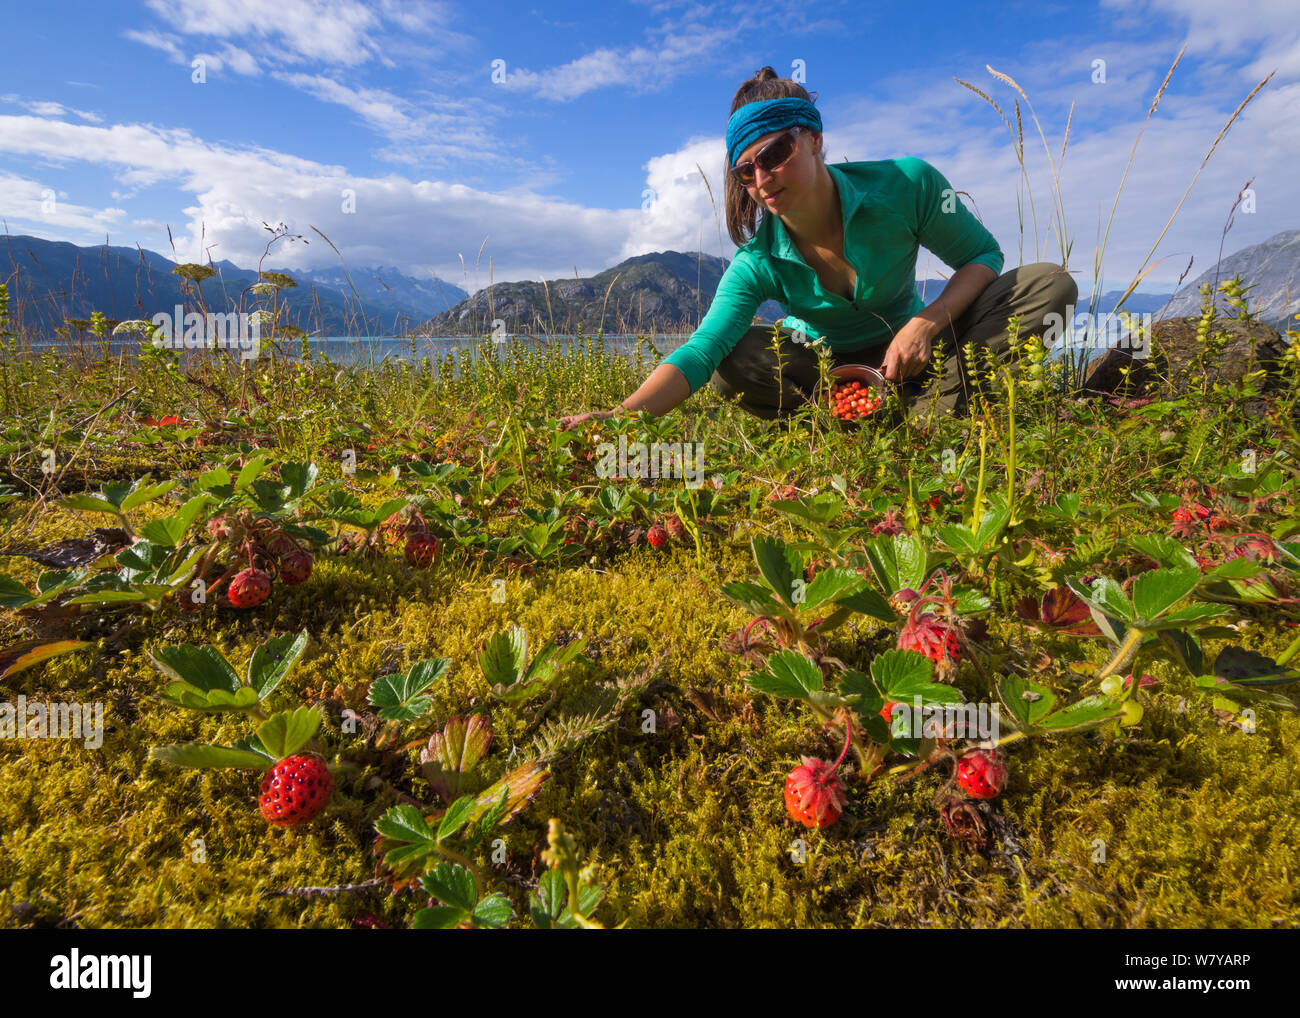 La collecte de randonneur fraises sauvages (Fragaria) près du camp sur une petite île dans le Parc National de Glacier Bay, Alaska, USA, août 2014. Parution du modèle. Banque D'Images